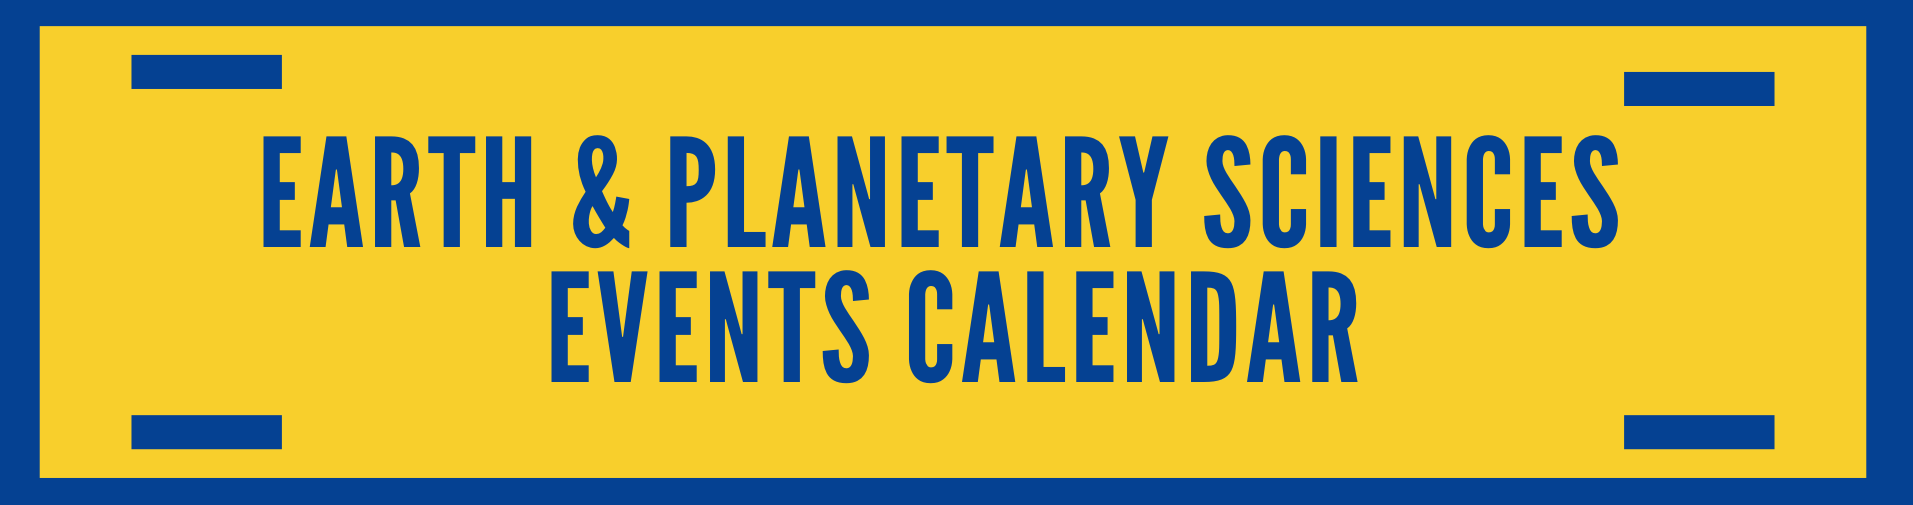 Earth & Planetary Sciences Event Calendar